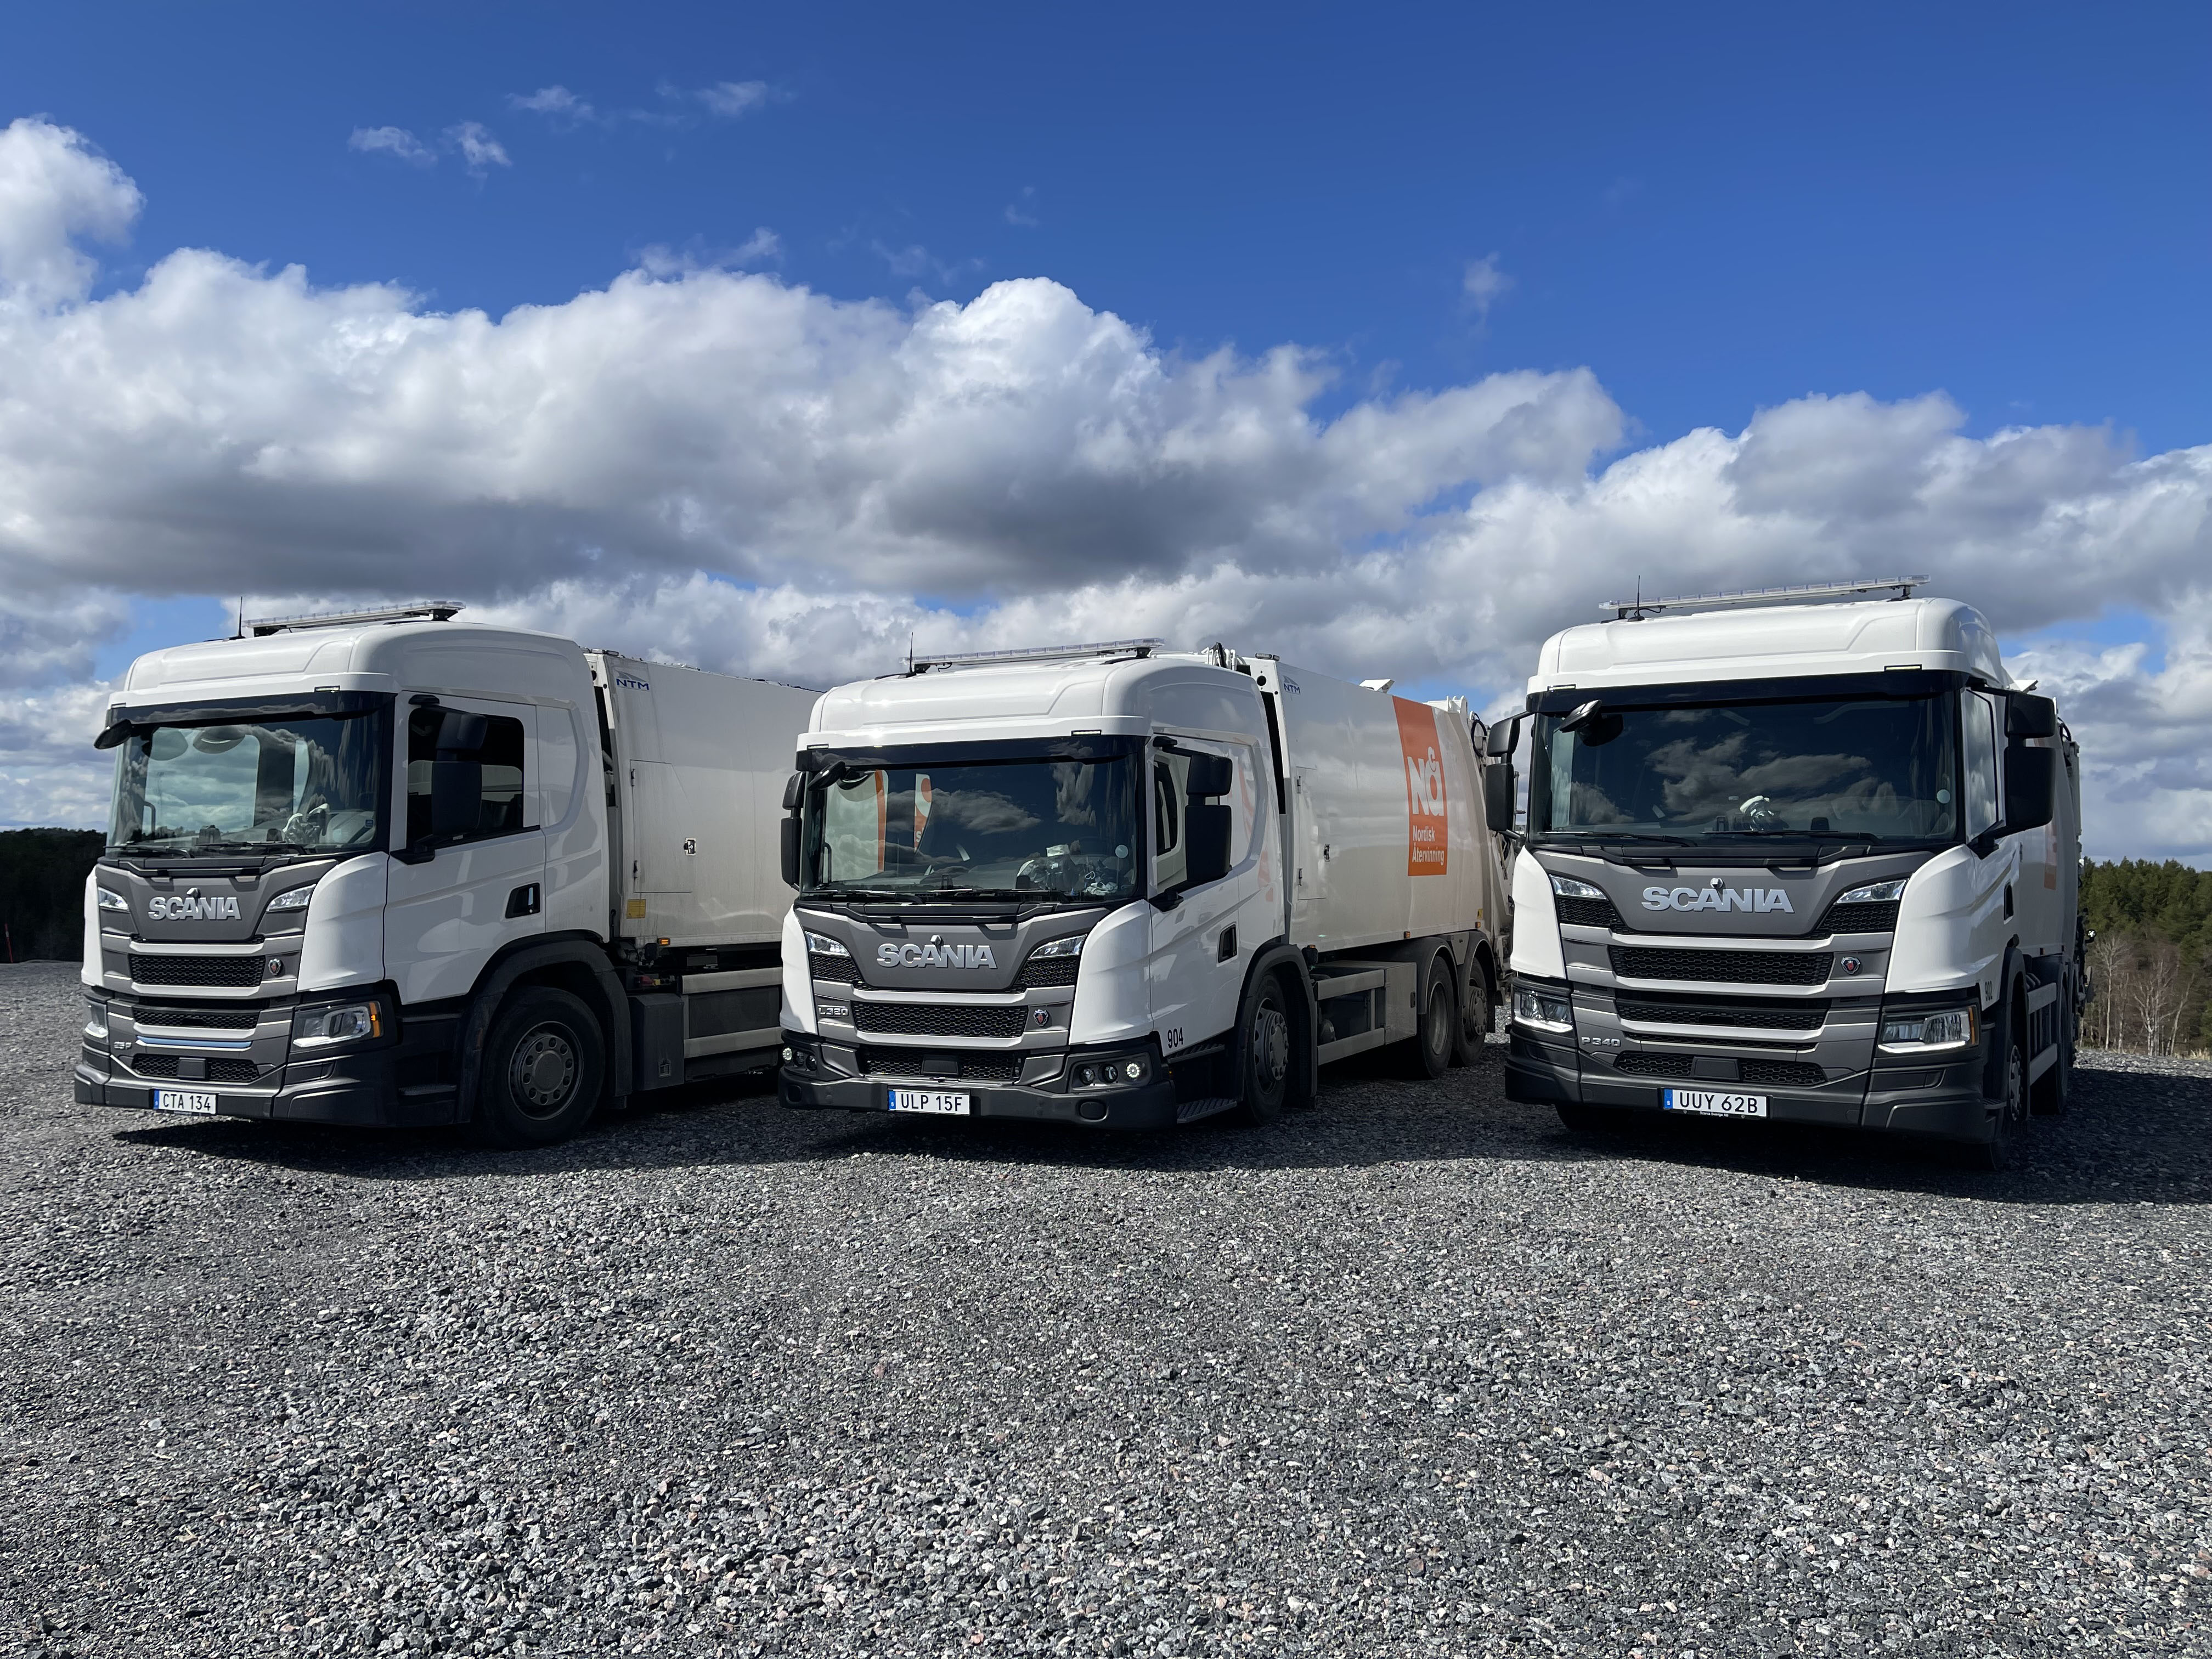 Una empresa sueca de gestión de residuos y reciclaje repite y amplía su flota con camiones equipados con cajas automáticas Allison